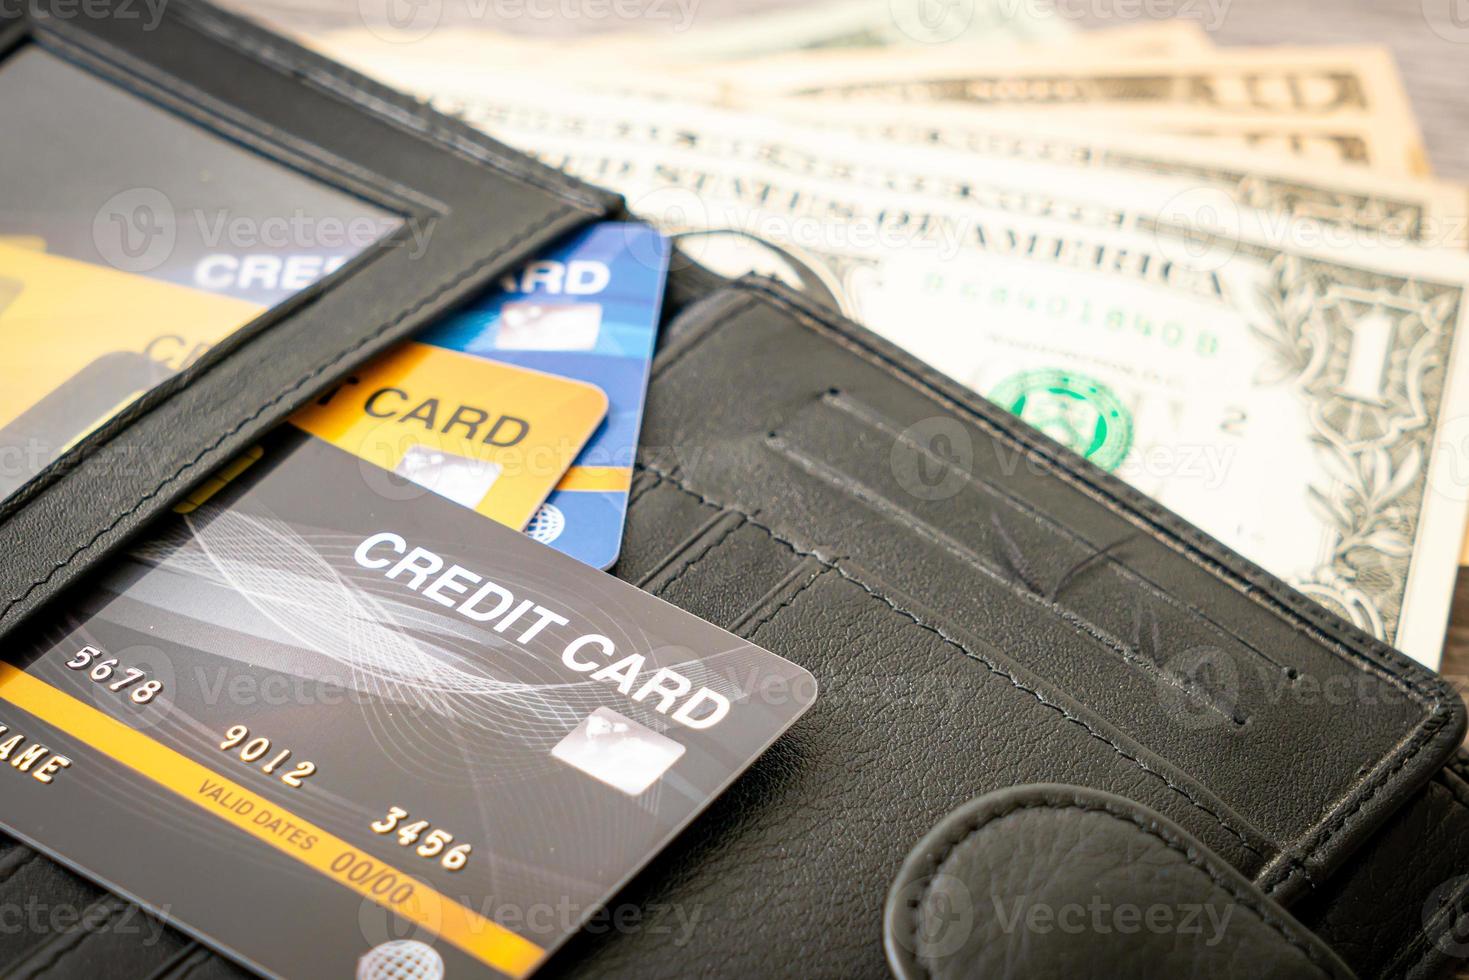 plånbok med pengar och kreditkort - ekonomi och finans koncept foto